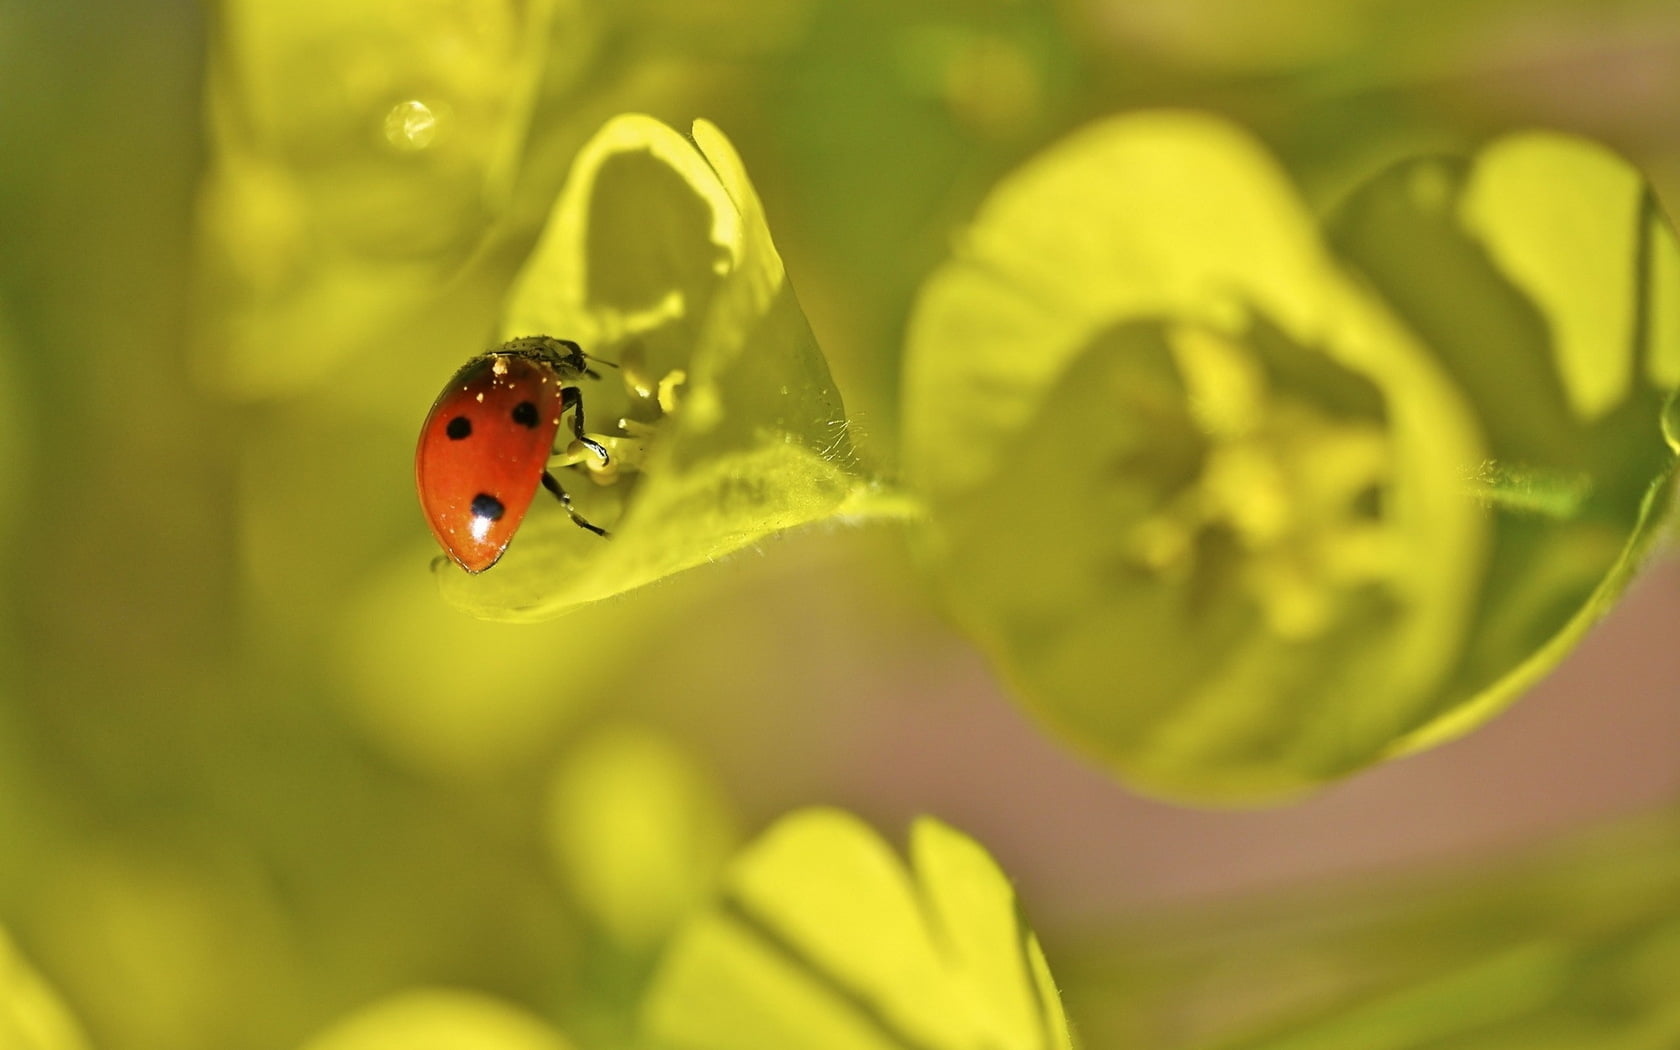 Lady bug on the green leaf plant